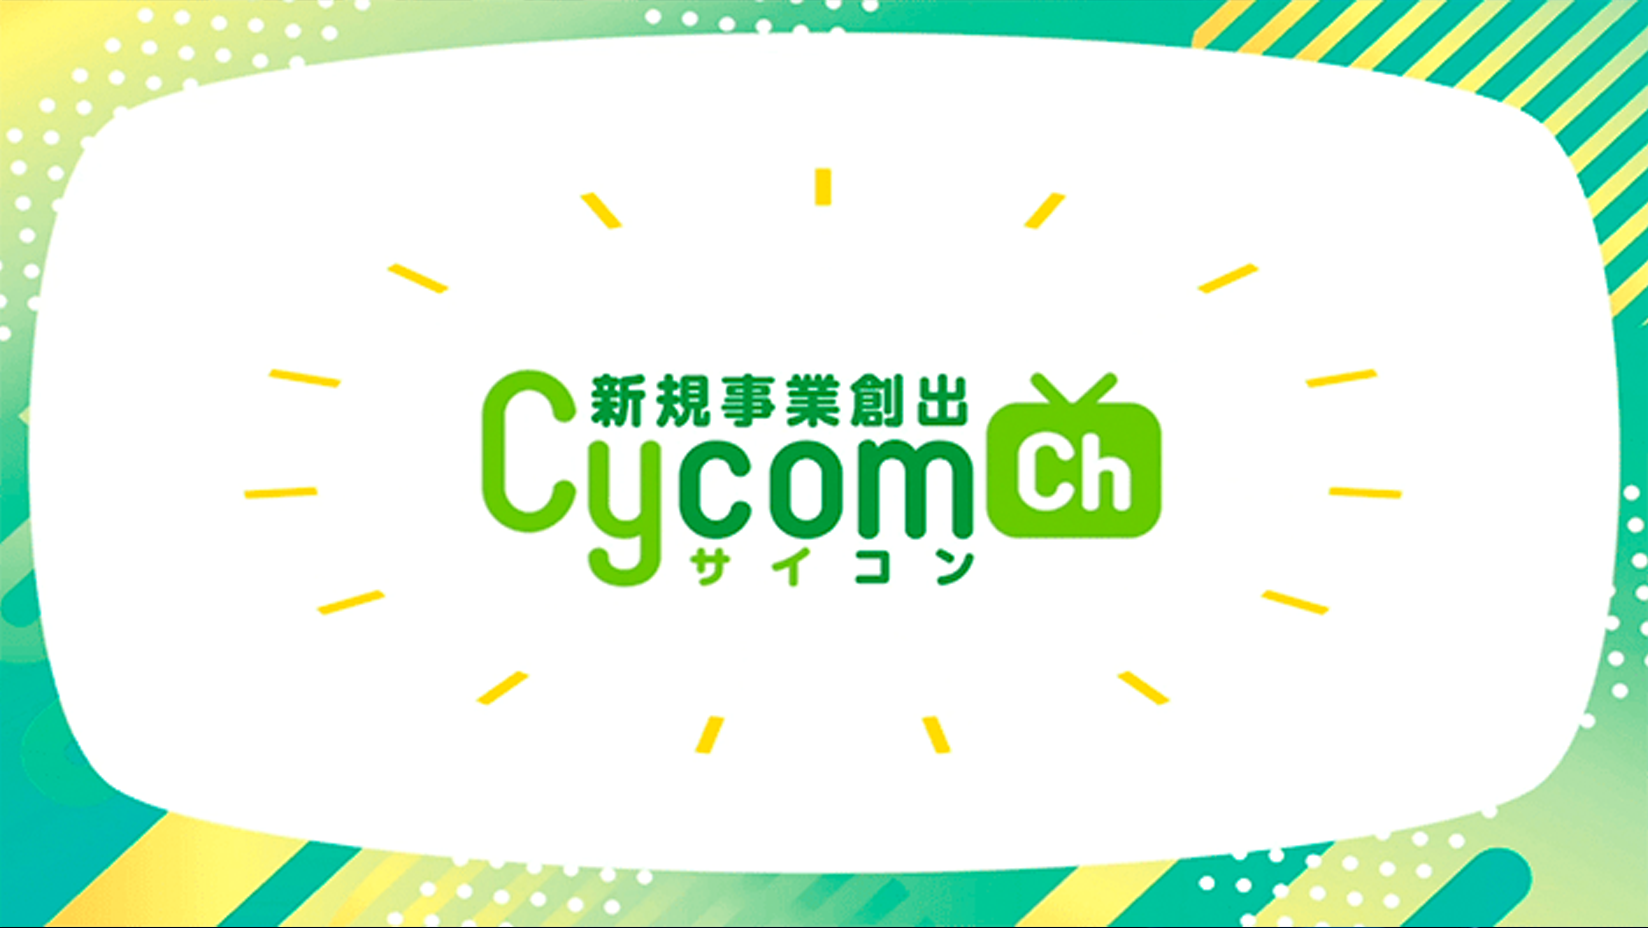 Cycom